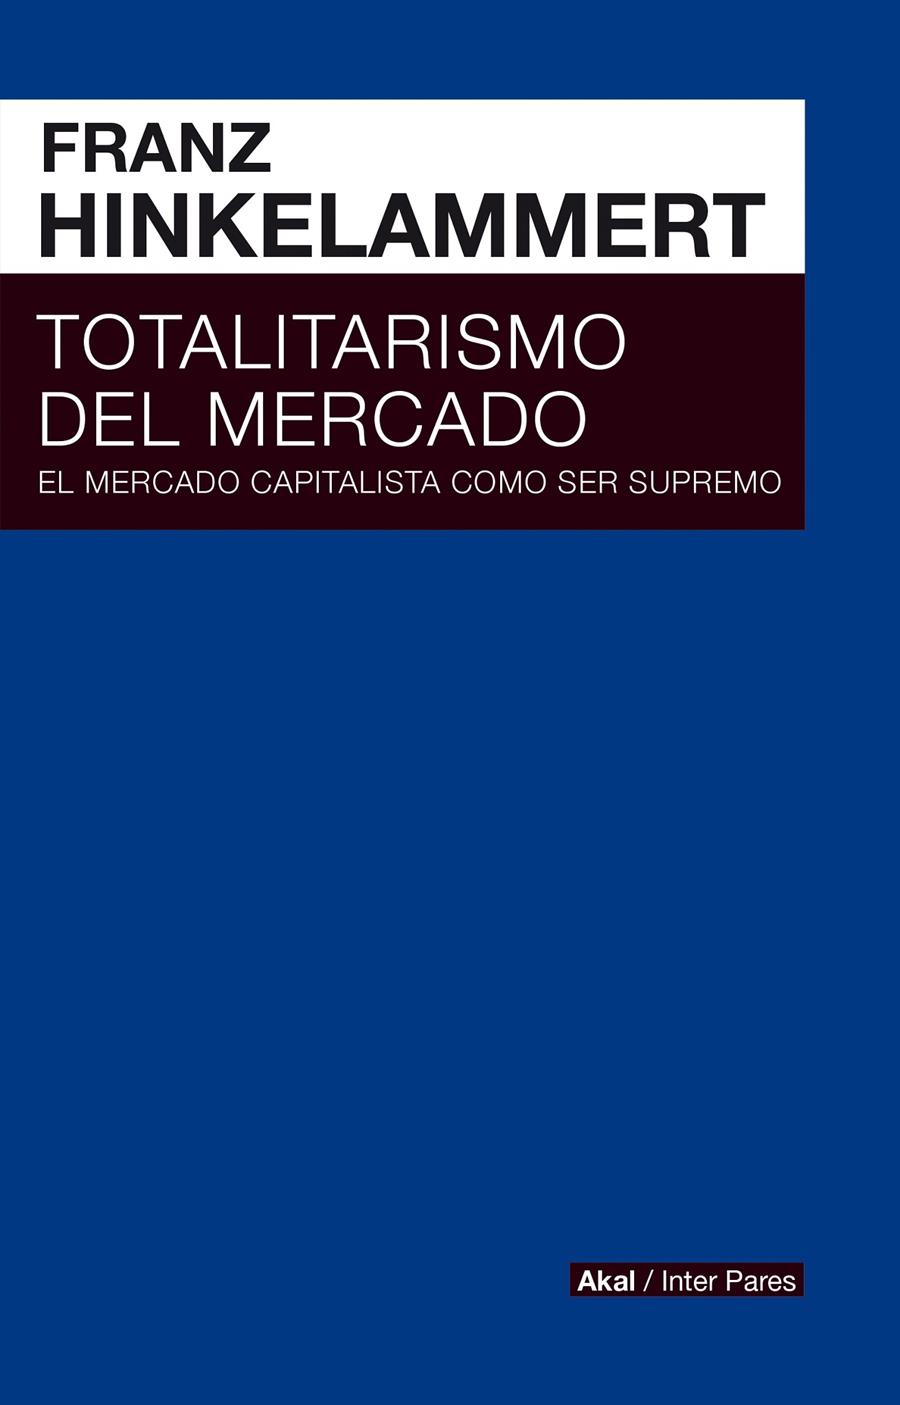 Totalitarismo del mercado | Franz Hinkelammert | Cooperativa autogestionària